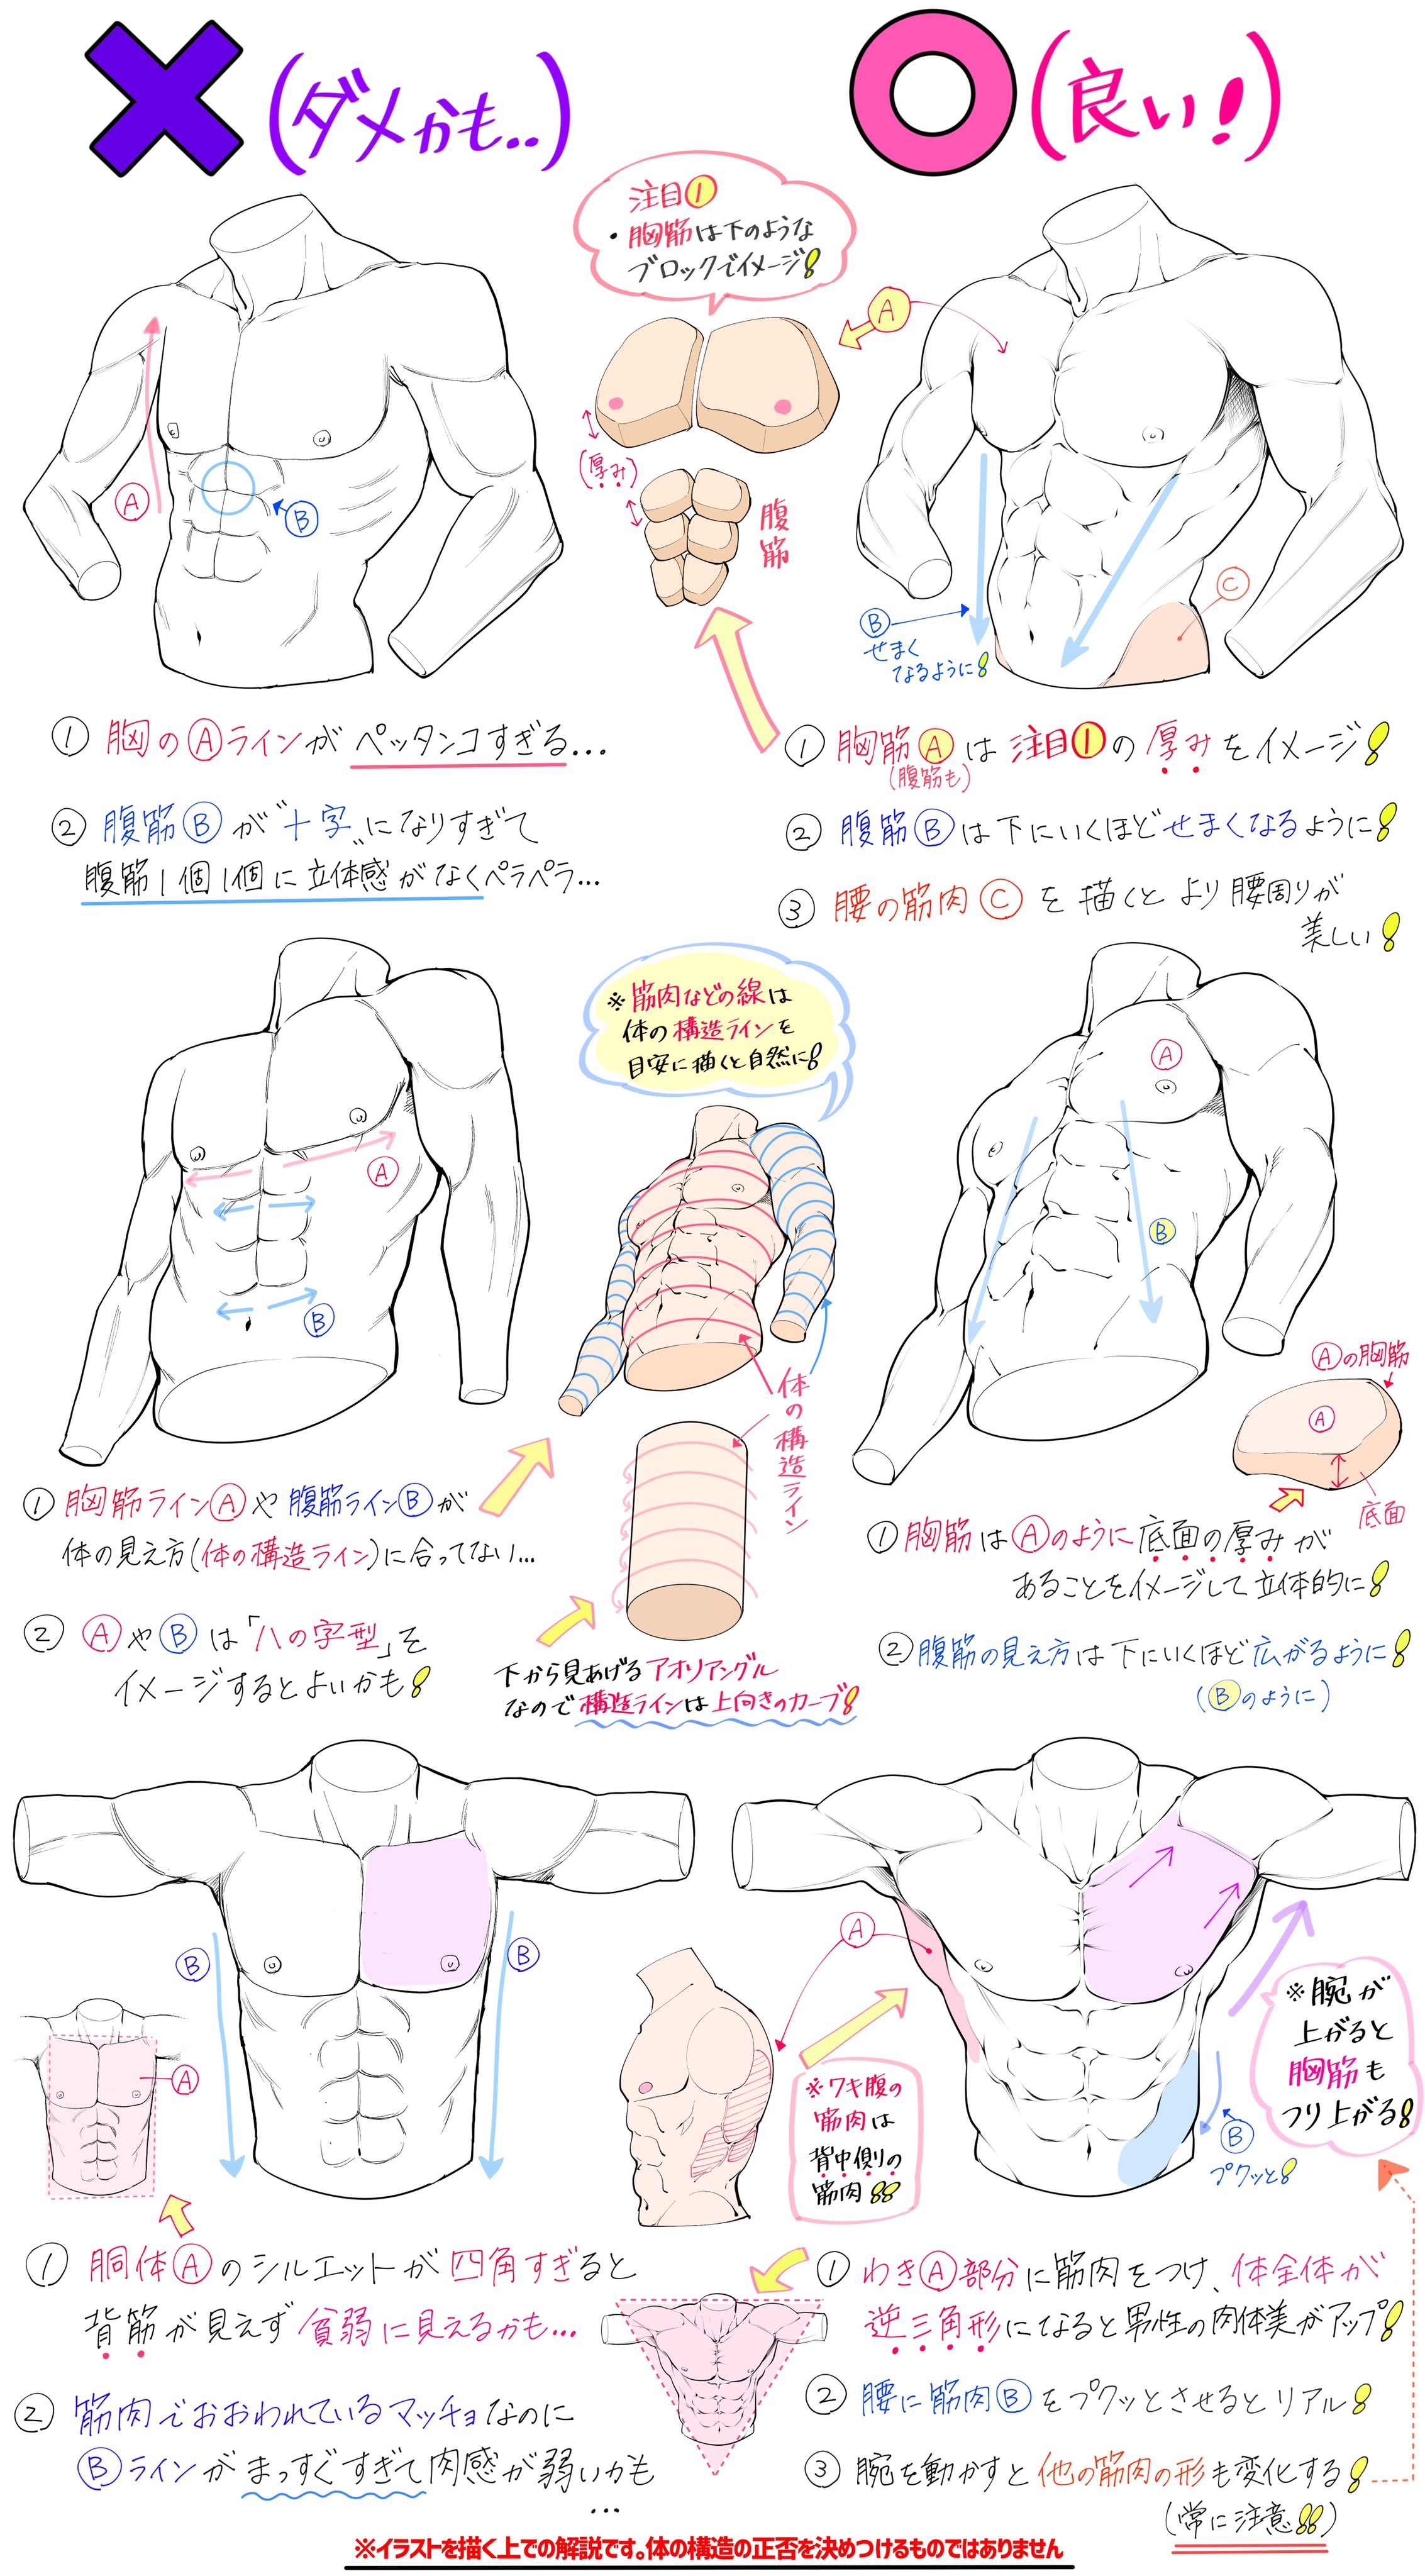 吉村拓也 イラスト講座 女性と男性のカラダを魅力的に描く 筋肉と骨格デッサン 図解まとめ T Co 2ka79hqth0 Twitter